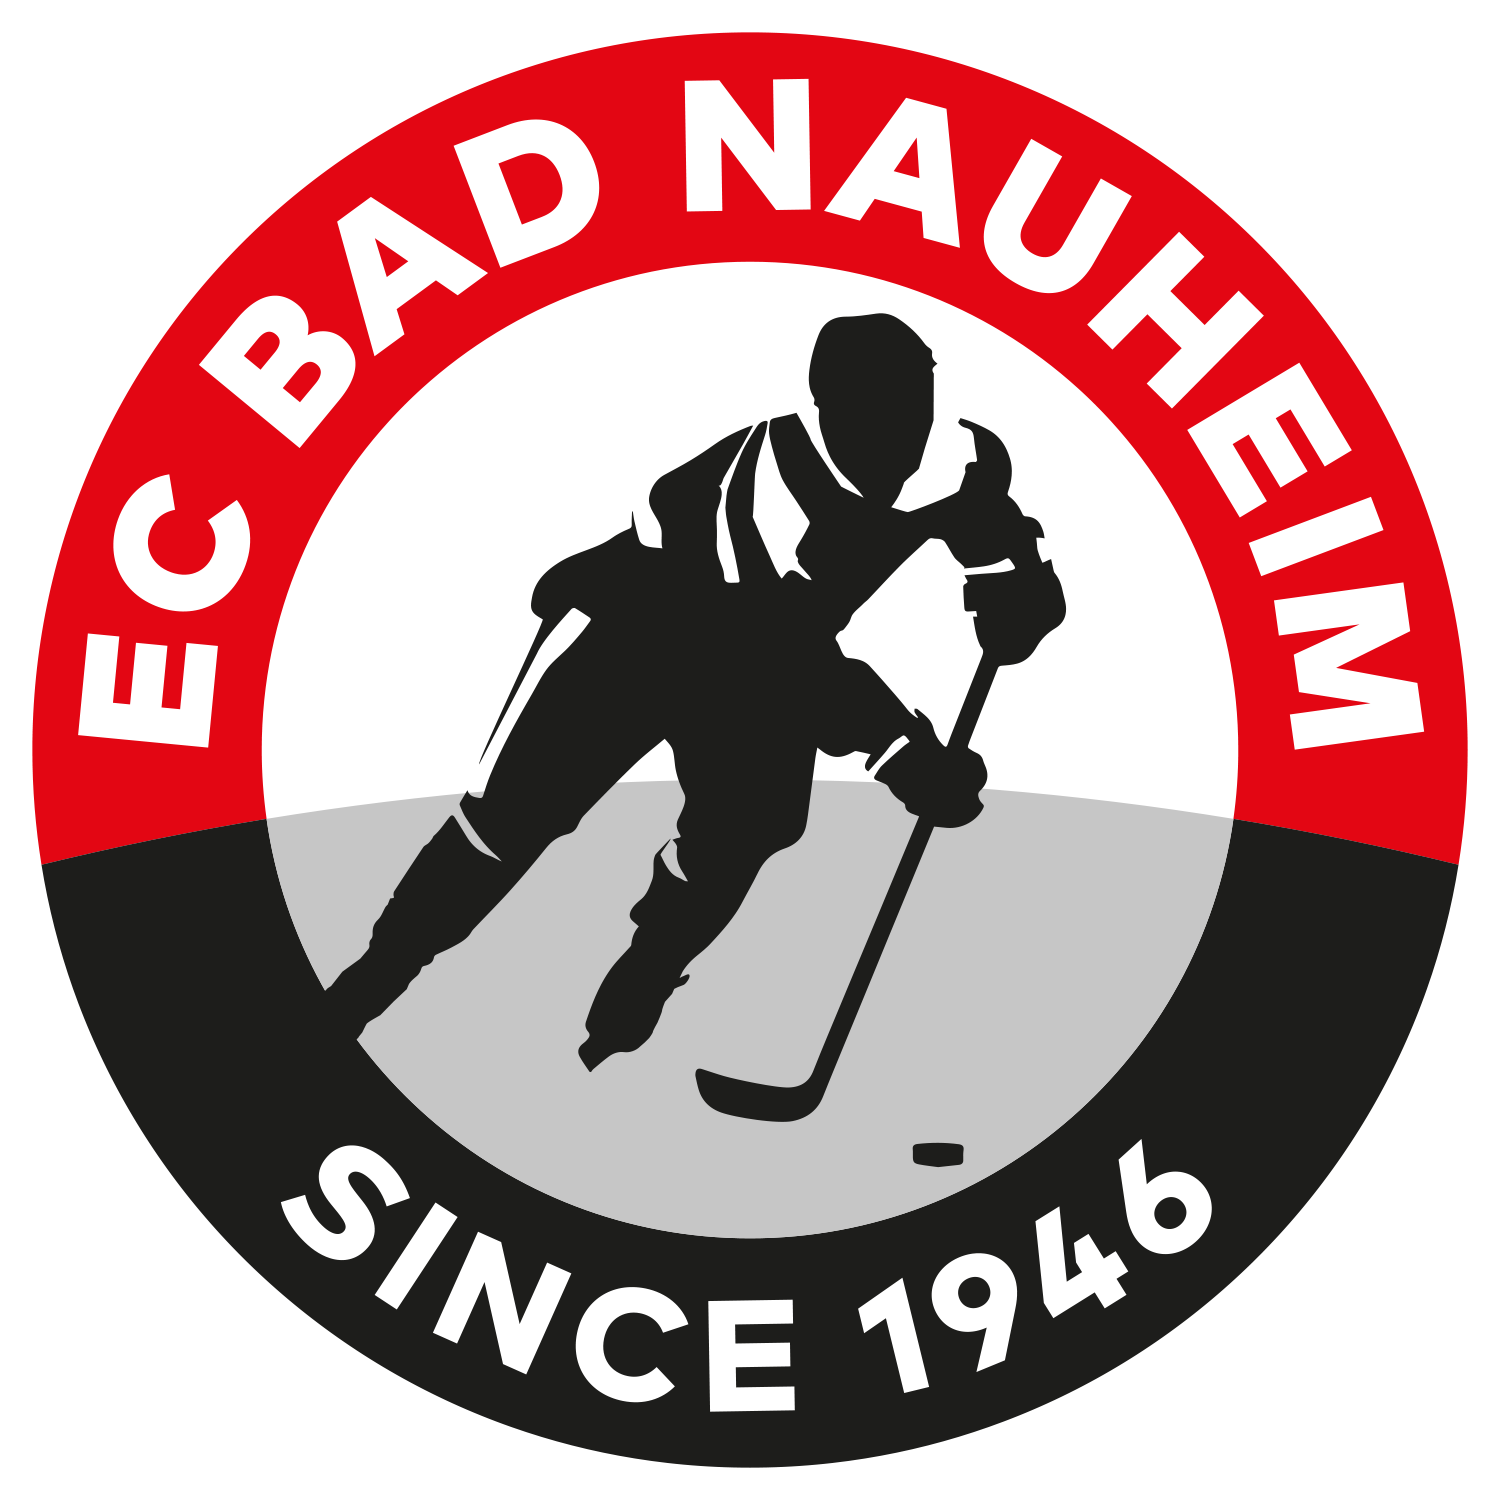 EC Bad Nauheim-team-logo